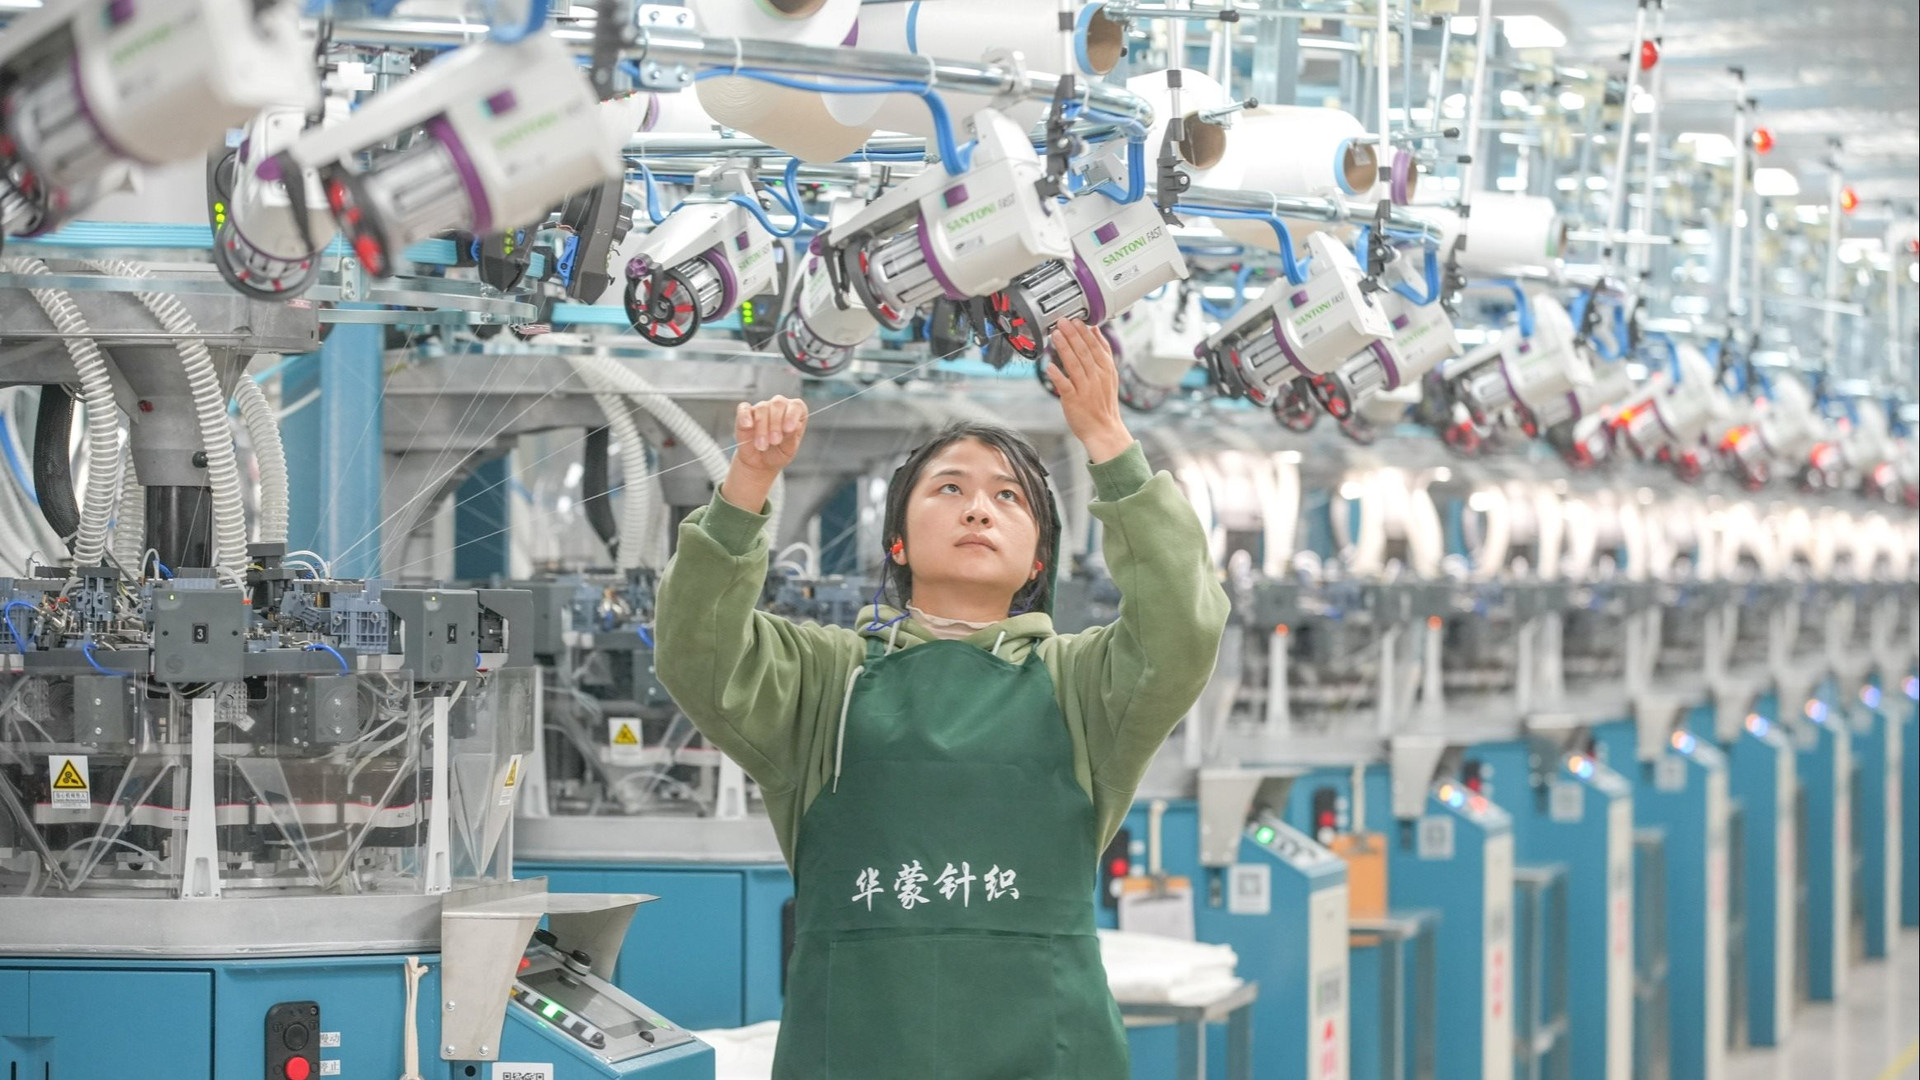 Đã qua thời hàng Made in China đi muôn nơi, các công ty may mặc đã rời khỏi Trung Quốc, họ đi đâu?